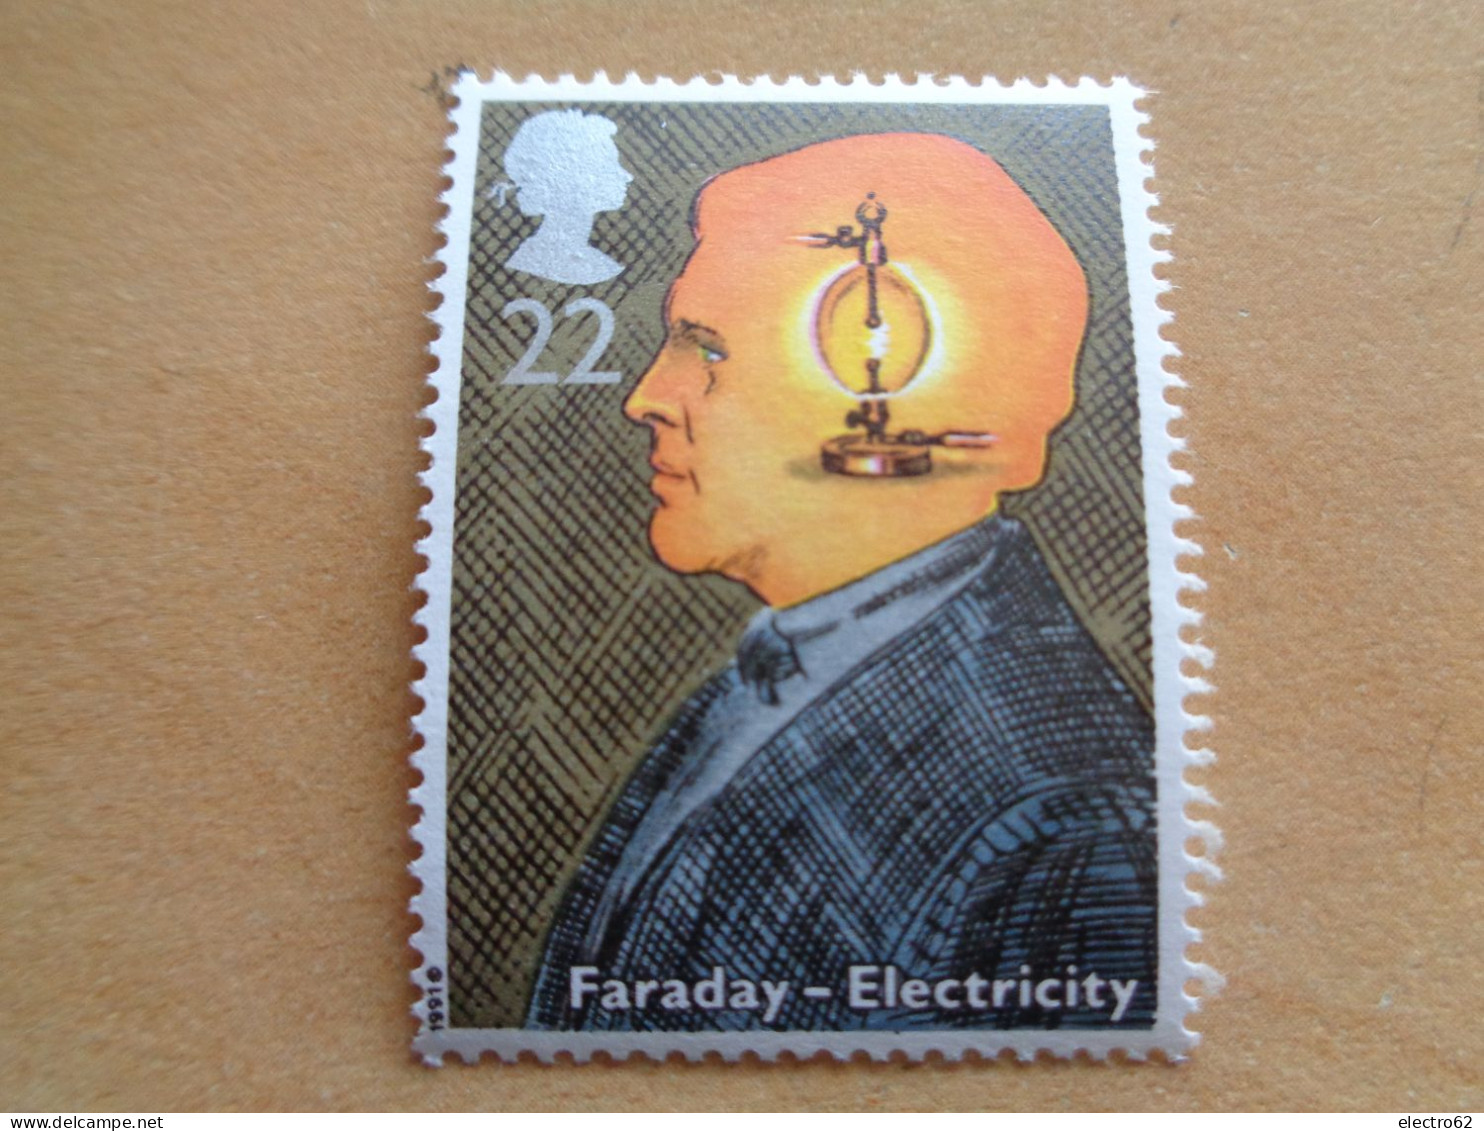 Grande Bretagne Great Britain Faraday électricité Electromagnétisme Electricity Großbitannien Brittannië 1991 Neuf - Electricité